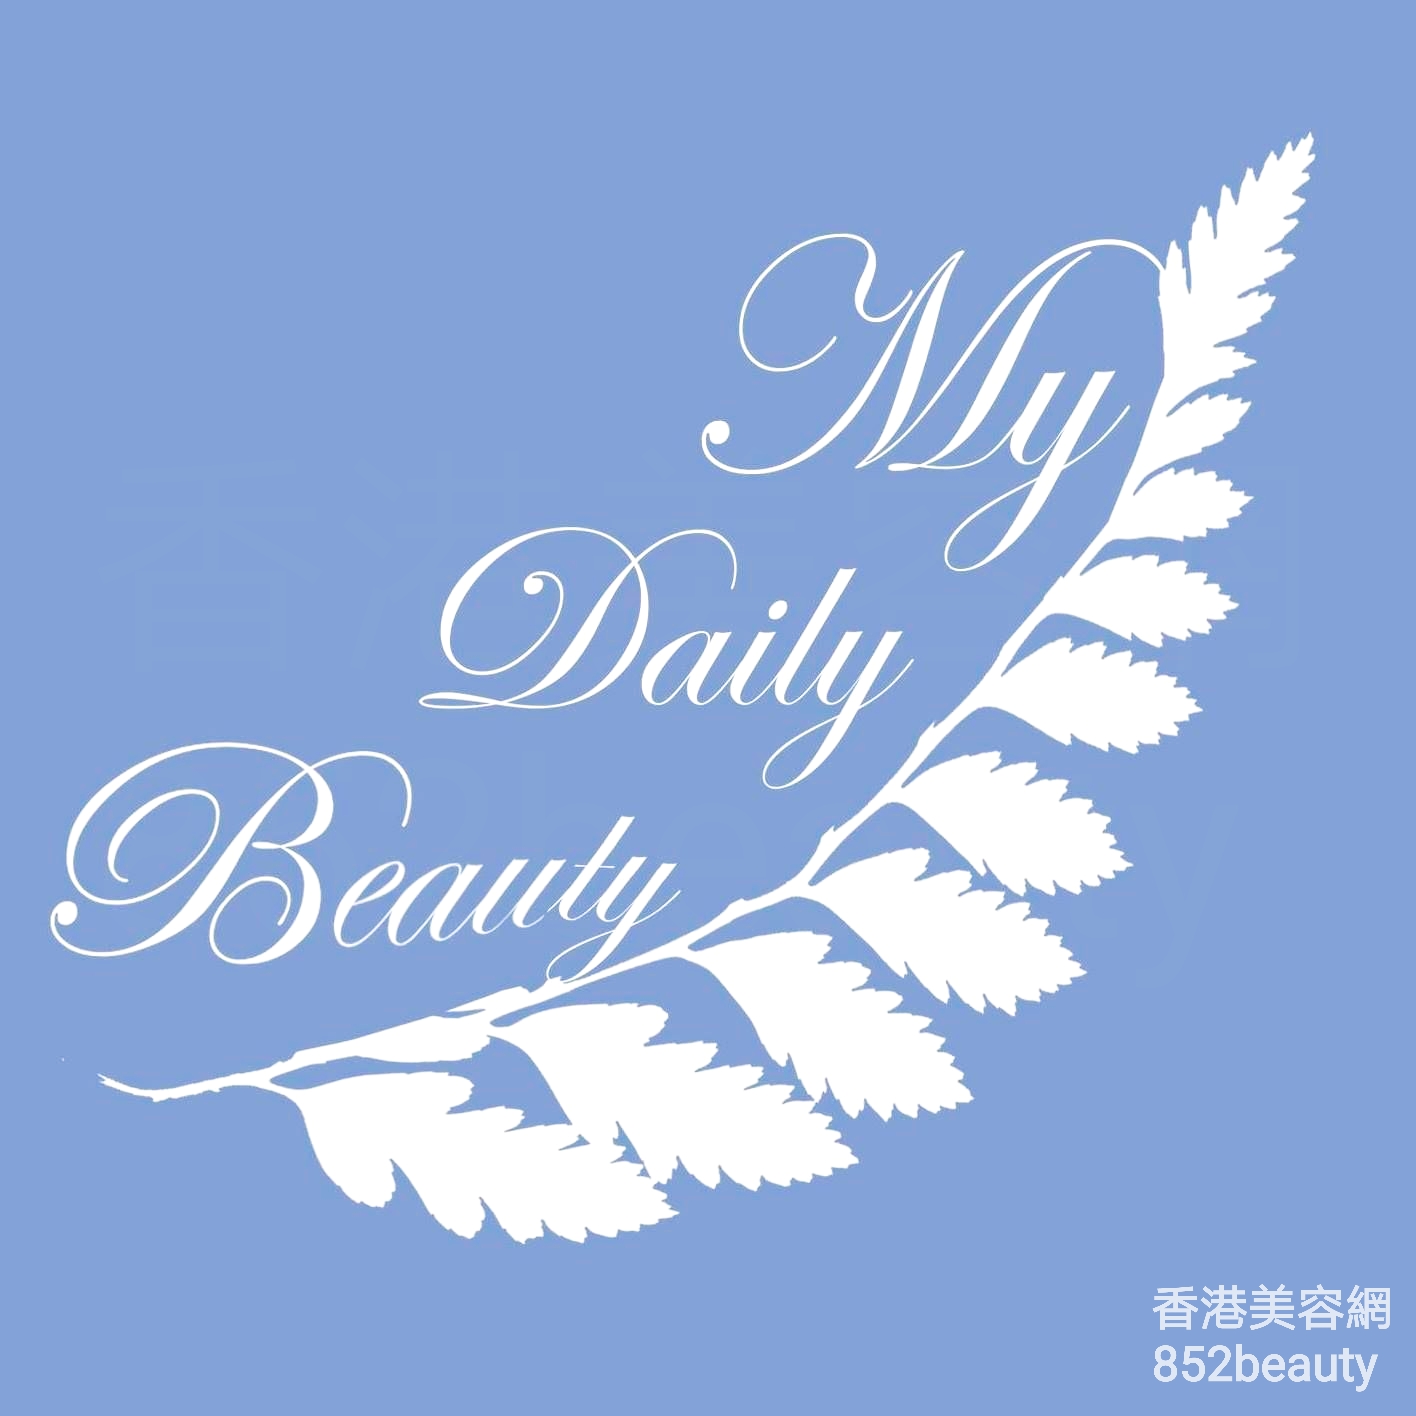 香港美容網 Hong Kong Beauty Salon 美容院 / 美容師: My Daily Beauty